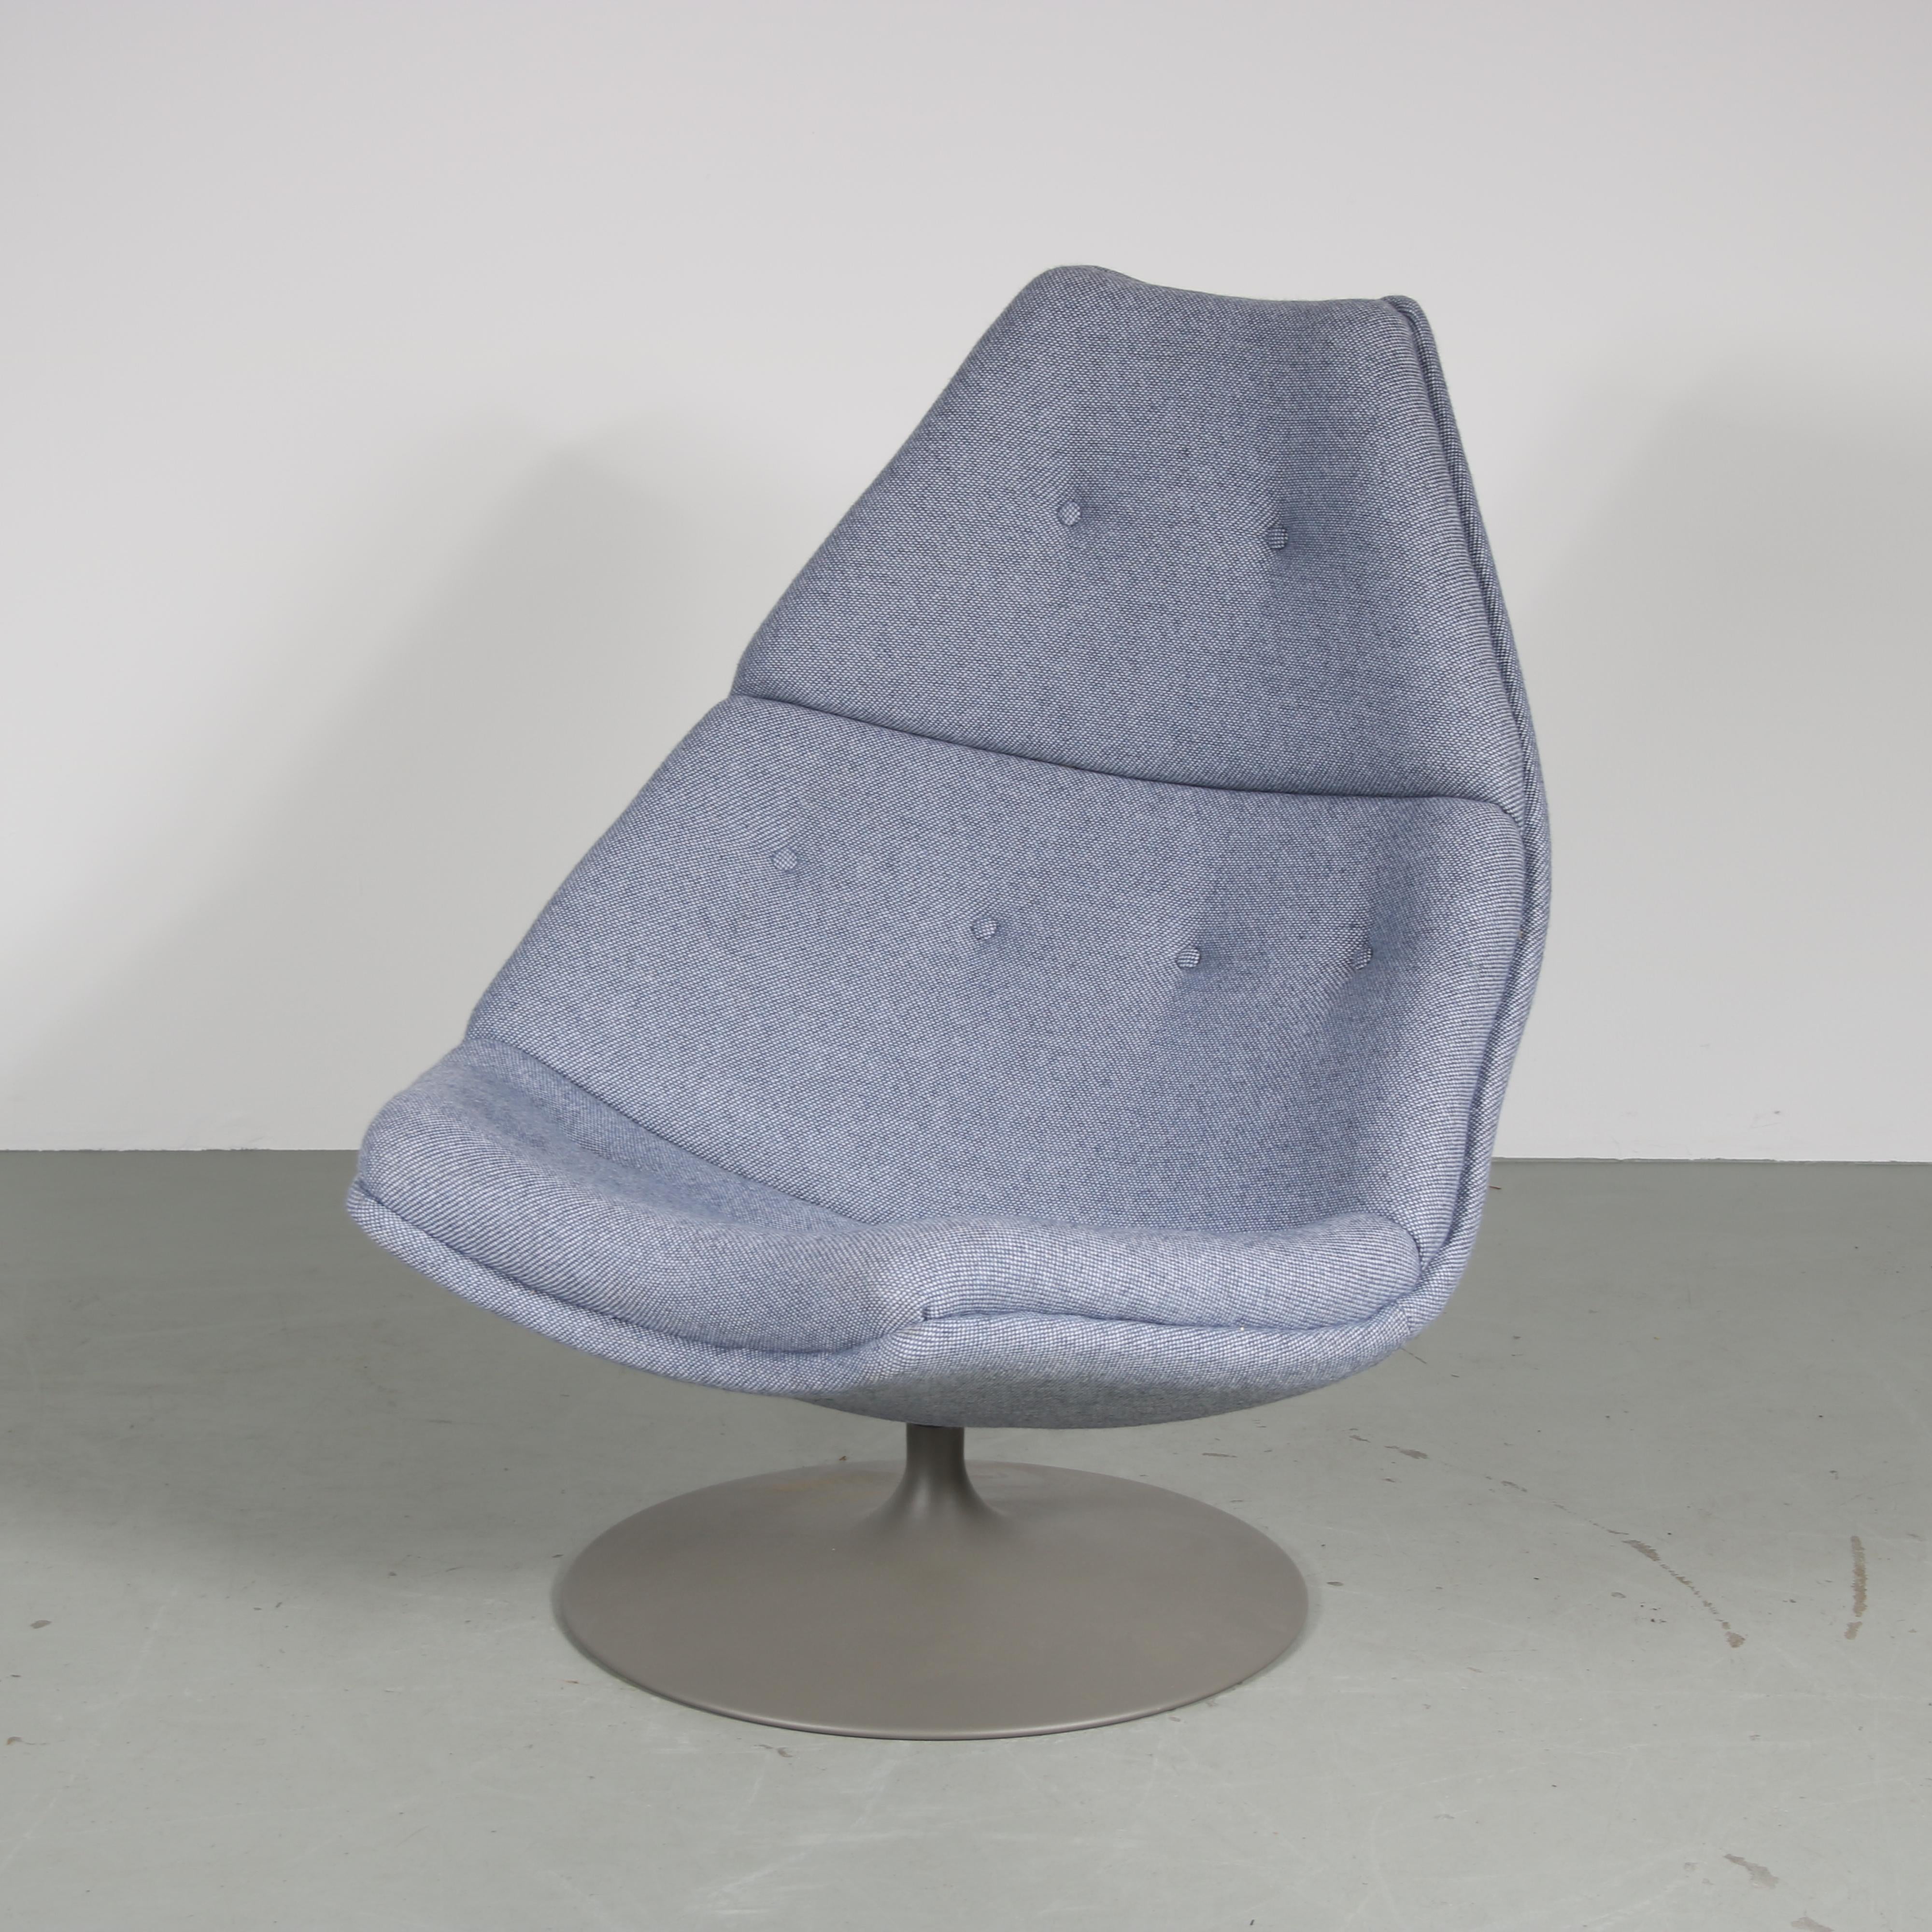 Une belle chaise longue conçue par Geoffrey Harcourt, fabriquée par Artifort aux Pays-Bas vers 1960.

Cette pièce emblématique, le modèle 588, est une pièce très reconnaissable du design du milieu du siècle ! L'assise large et arrondie offre un